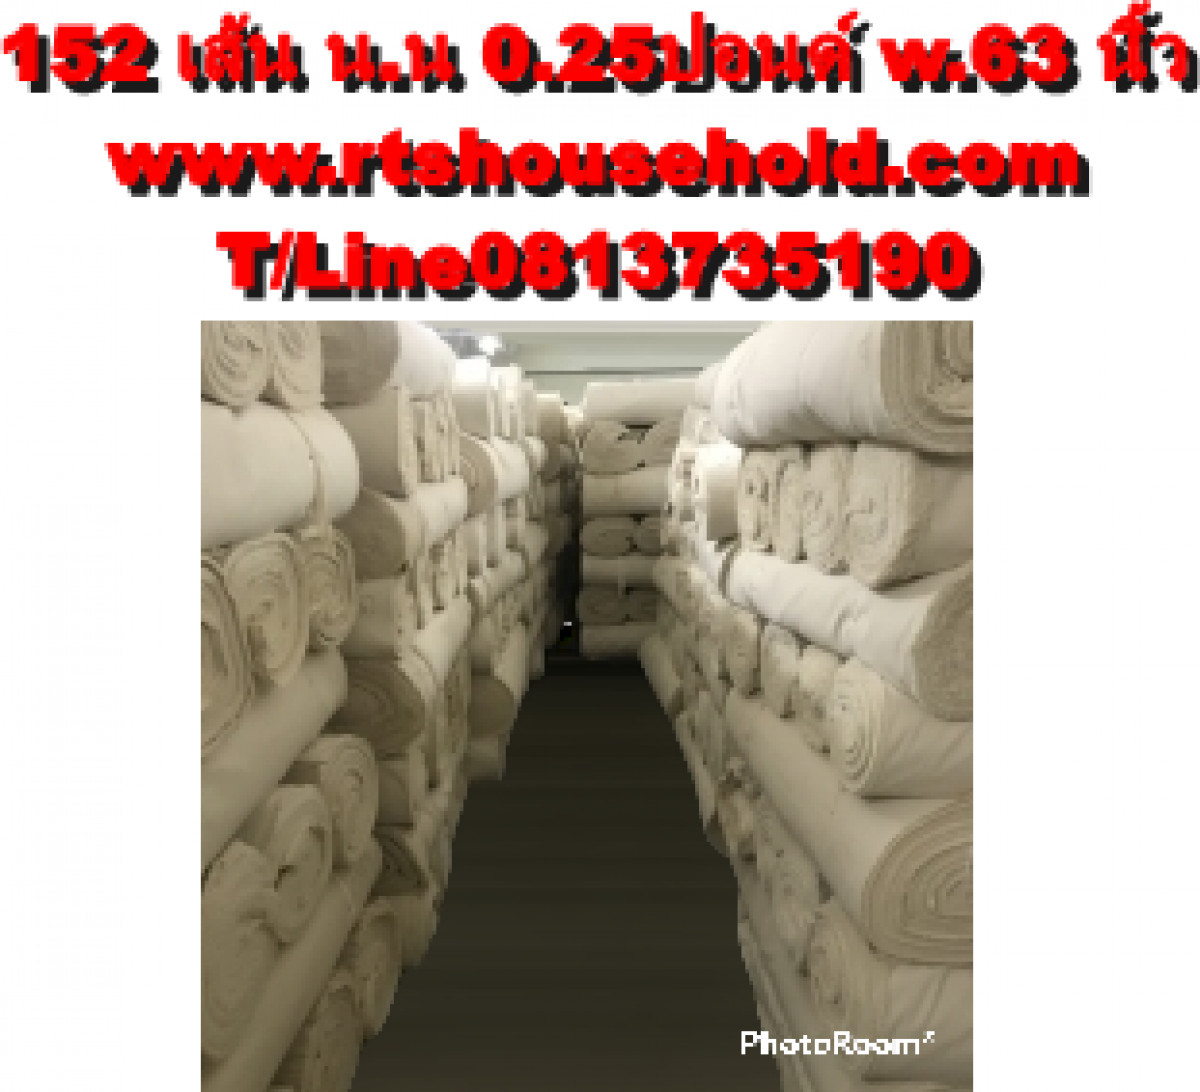 ผ้าดิบเนื้อหนาราคาถูกสุดๆ081-373-5190  ผ้าดิบ 152 เส้น น.น 0.25ปอนด์